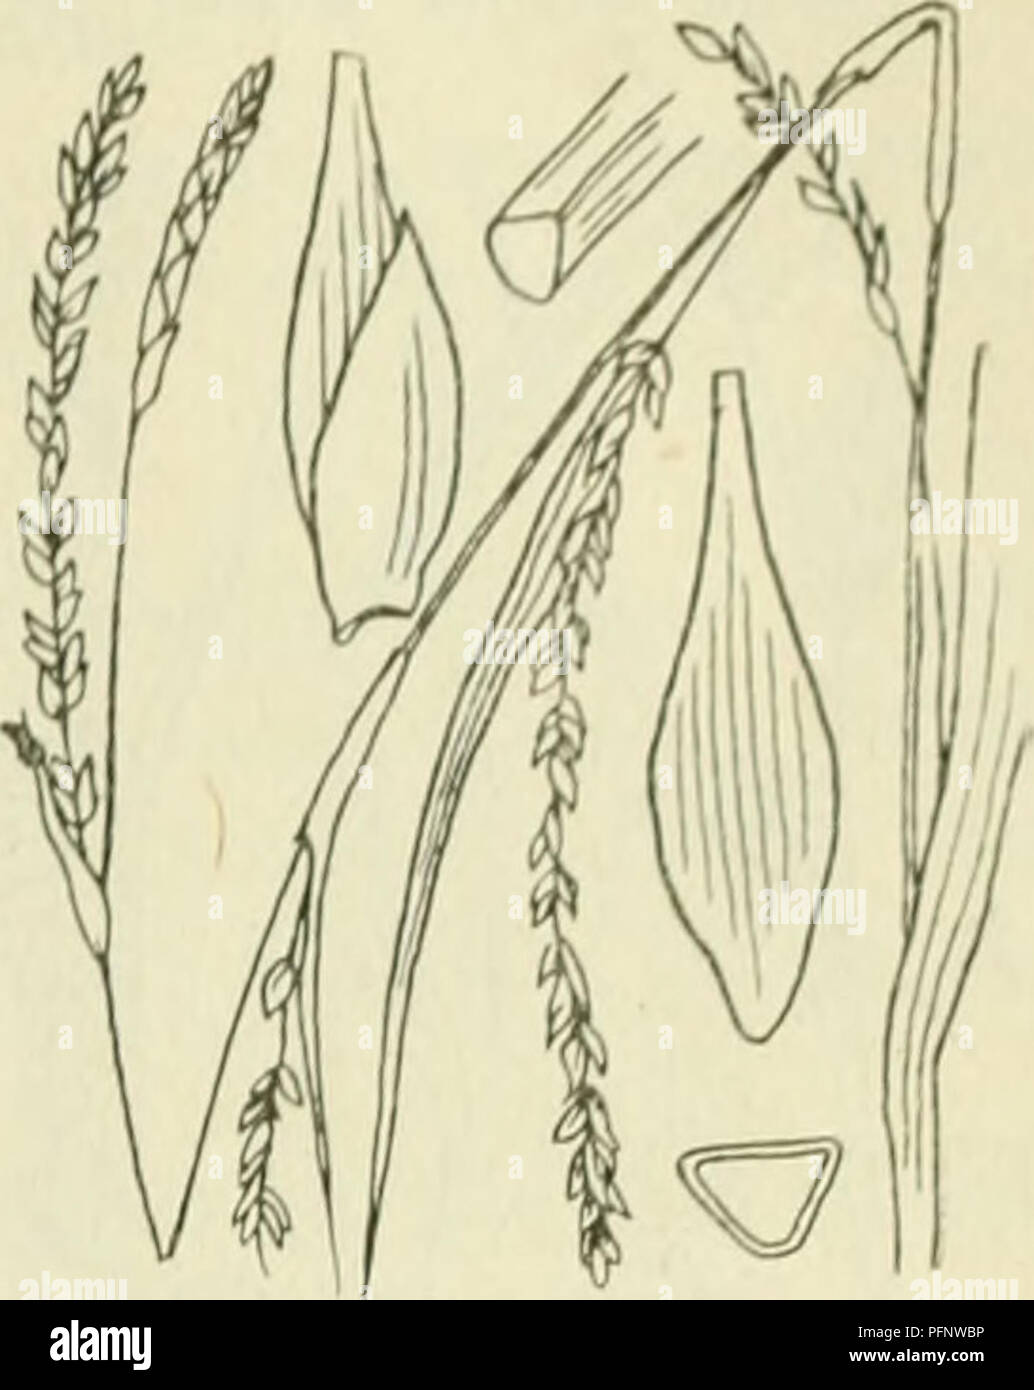 . De flora van Nederland. Piante. FAM1L11-: 17. Â CYPERACEAE. 403. Carex strigosa Fig. 326. zaani anche ina als ile iinitjes. Deze (fiÂ". 32(5) zijn drickantit,'-Iancctvormitj;-ellipsoÃ¯discli, circa 3 mM lanj,', veelnervi.u, noiei(Jeliji&LT; in den zeer iiei&lt;notten snavel versmald. Het mannelijke aartje è los- bloemij;, smai, verlcn.ud, tof 5 cM lanf,', de kafjes zijn vaak iets bruinachtig'niet stevijje, groene middenstreep. De vruchten zijn zeer klein, nog niet 2 mM lang, eirond, driekanti.u. ^â . 6-10 dM. Mei, Juni. Voorkomen in Europa en in Nederland. De impianto komt in Midden-Europa ve Foto Stock